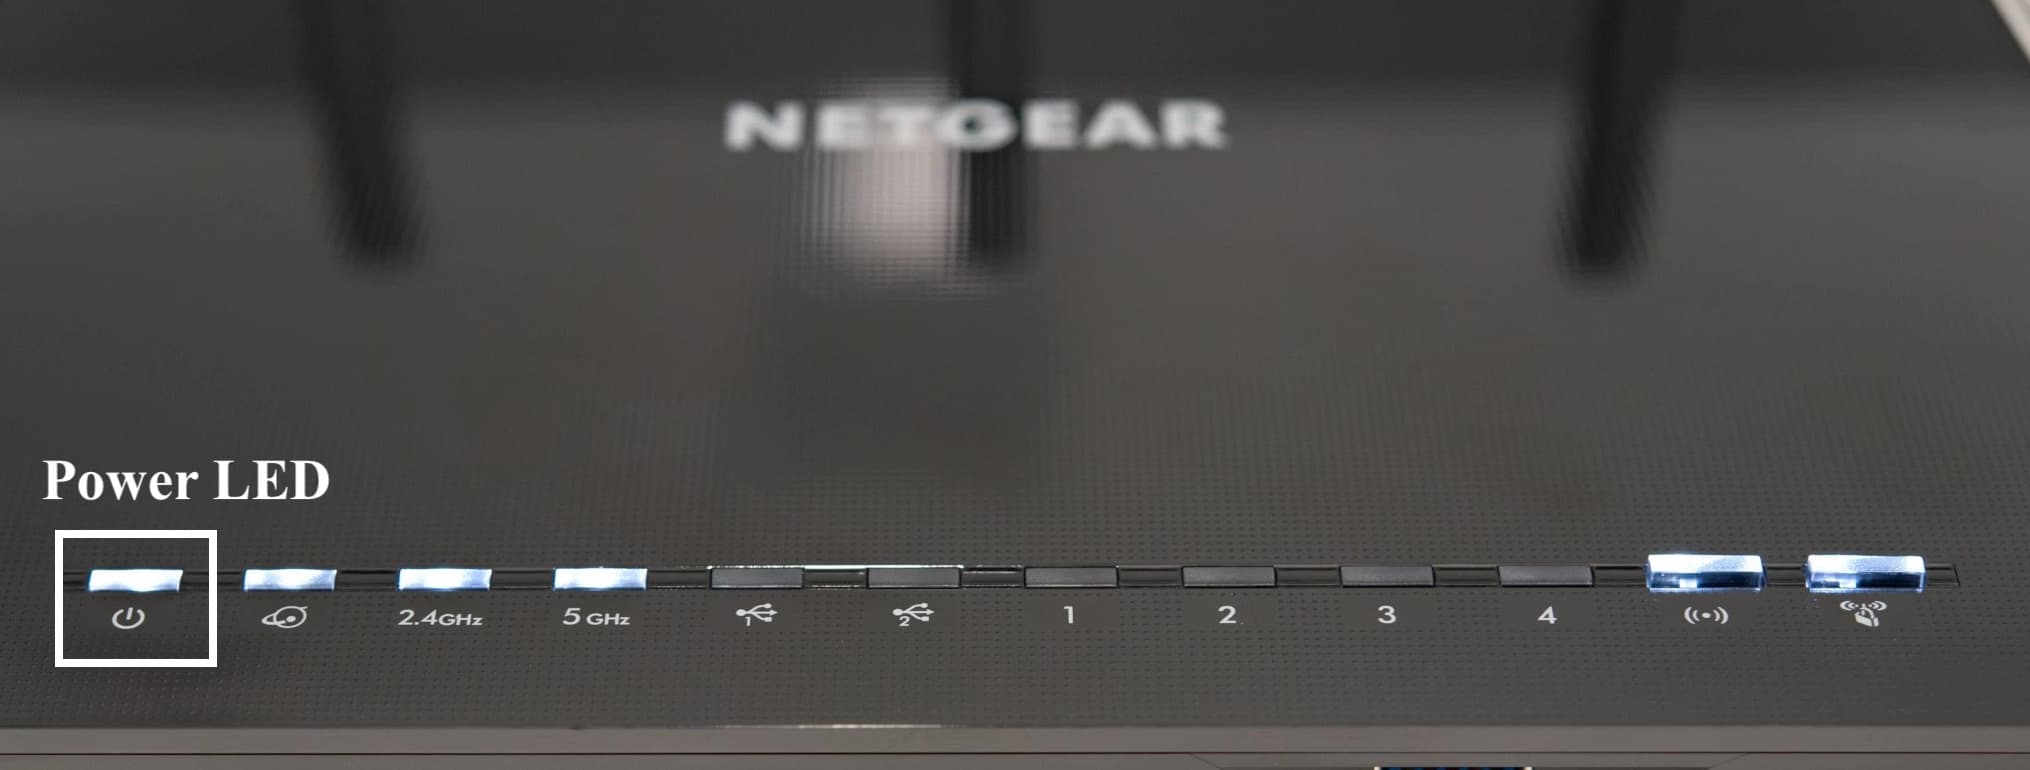 Power LED on Netgear Router